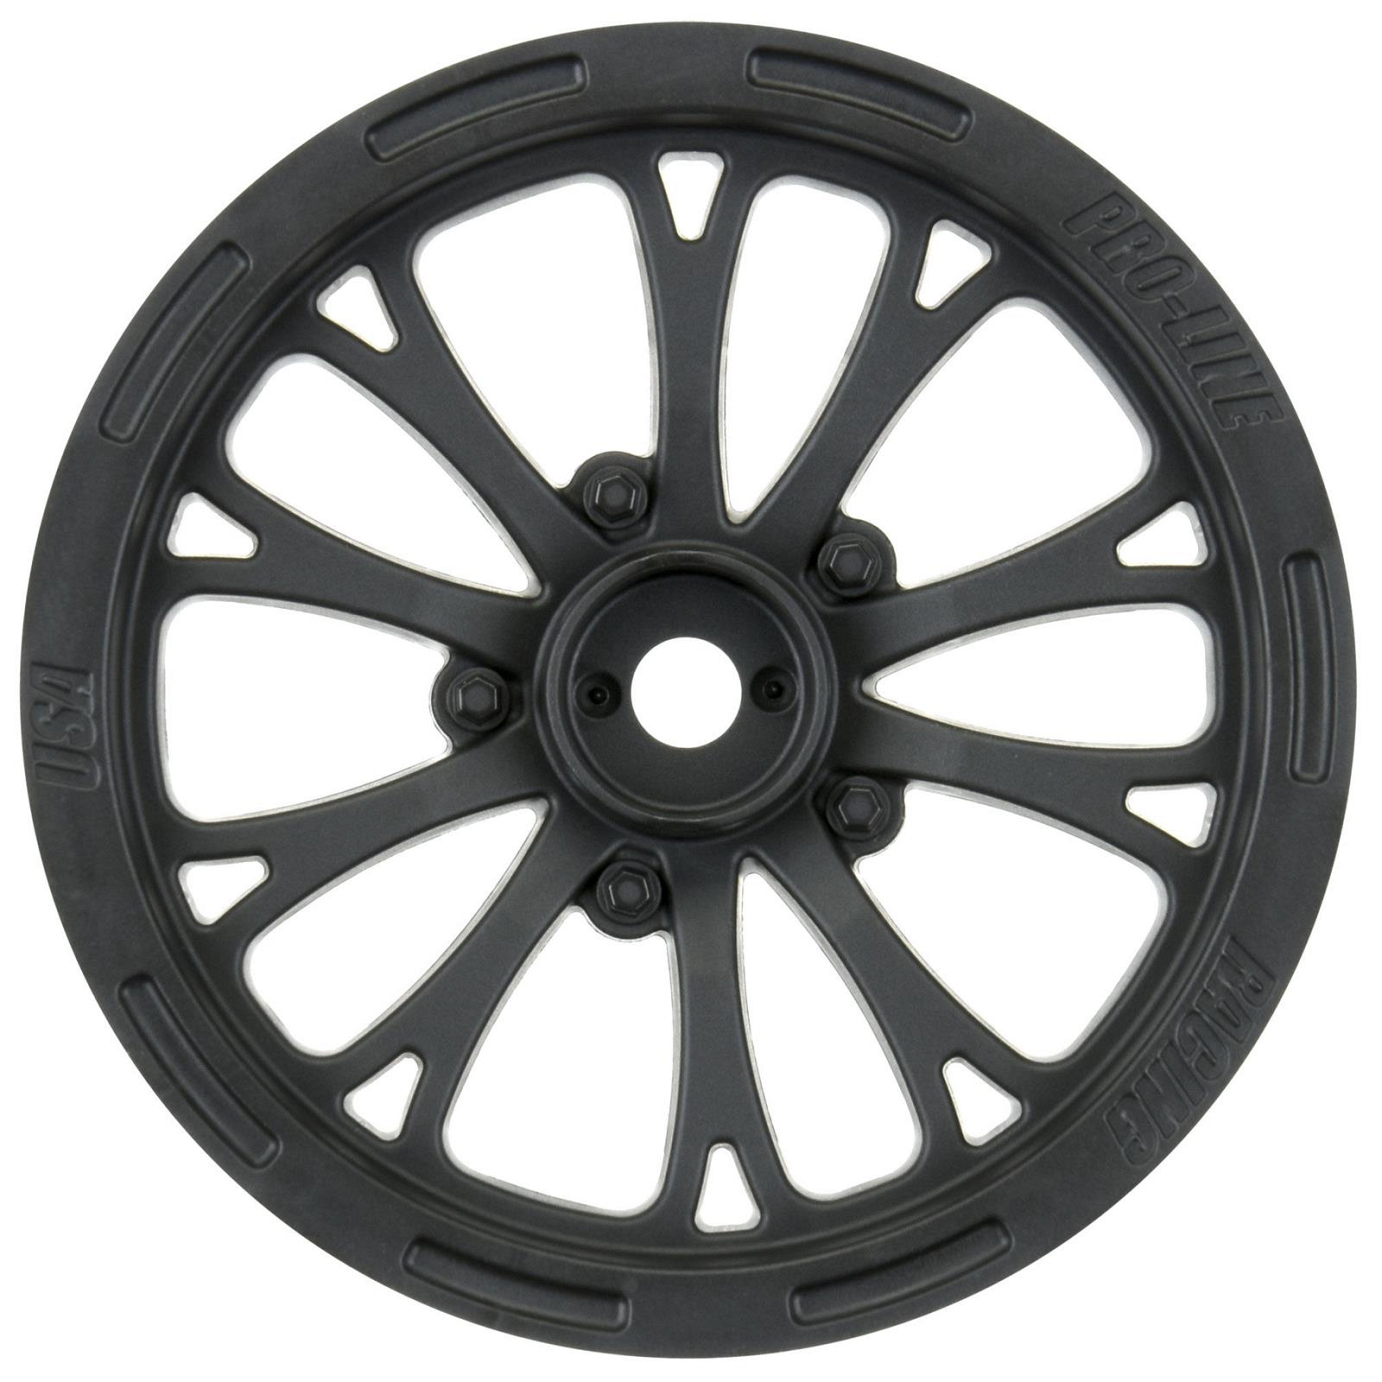 Proline 1/10 Pomona Drag Spec 2.2in Black Front Wheels, Slash, 2